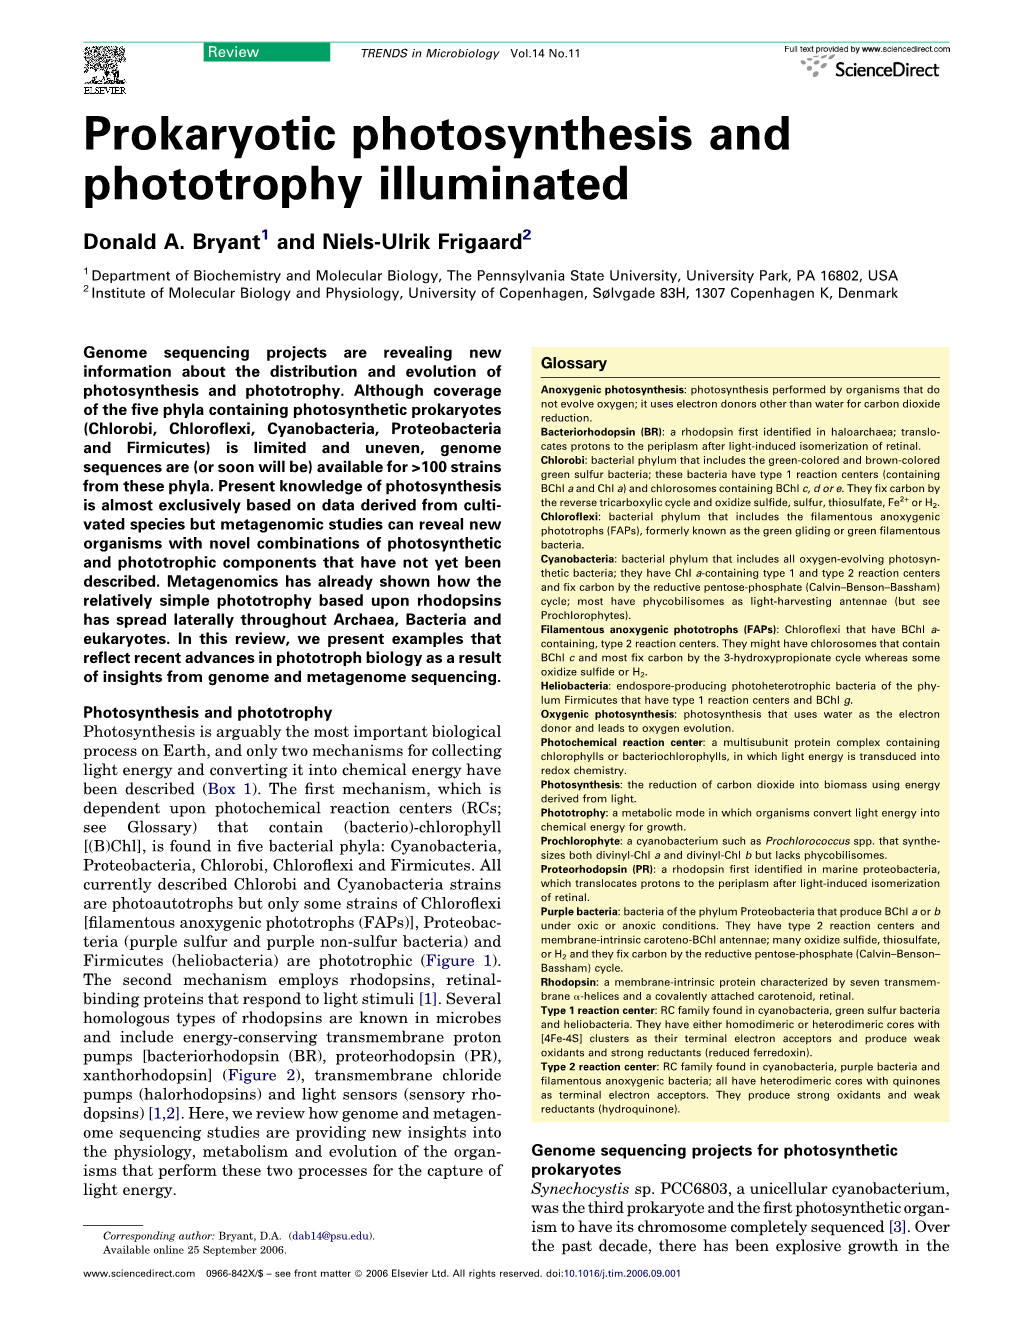 Prokaryotic Photosynthesis and Phototrophy Illuminated